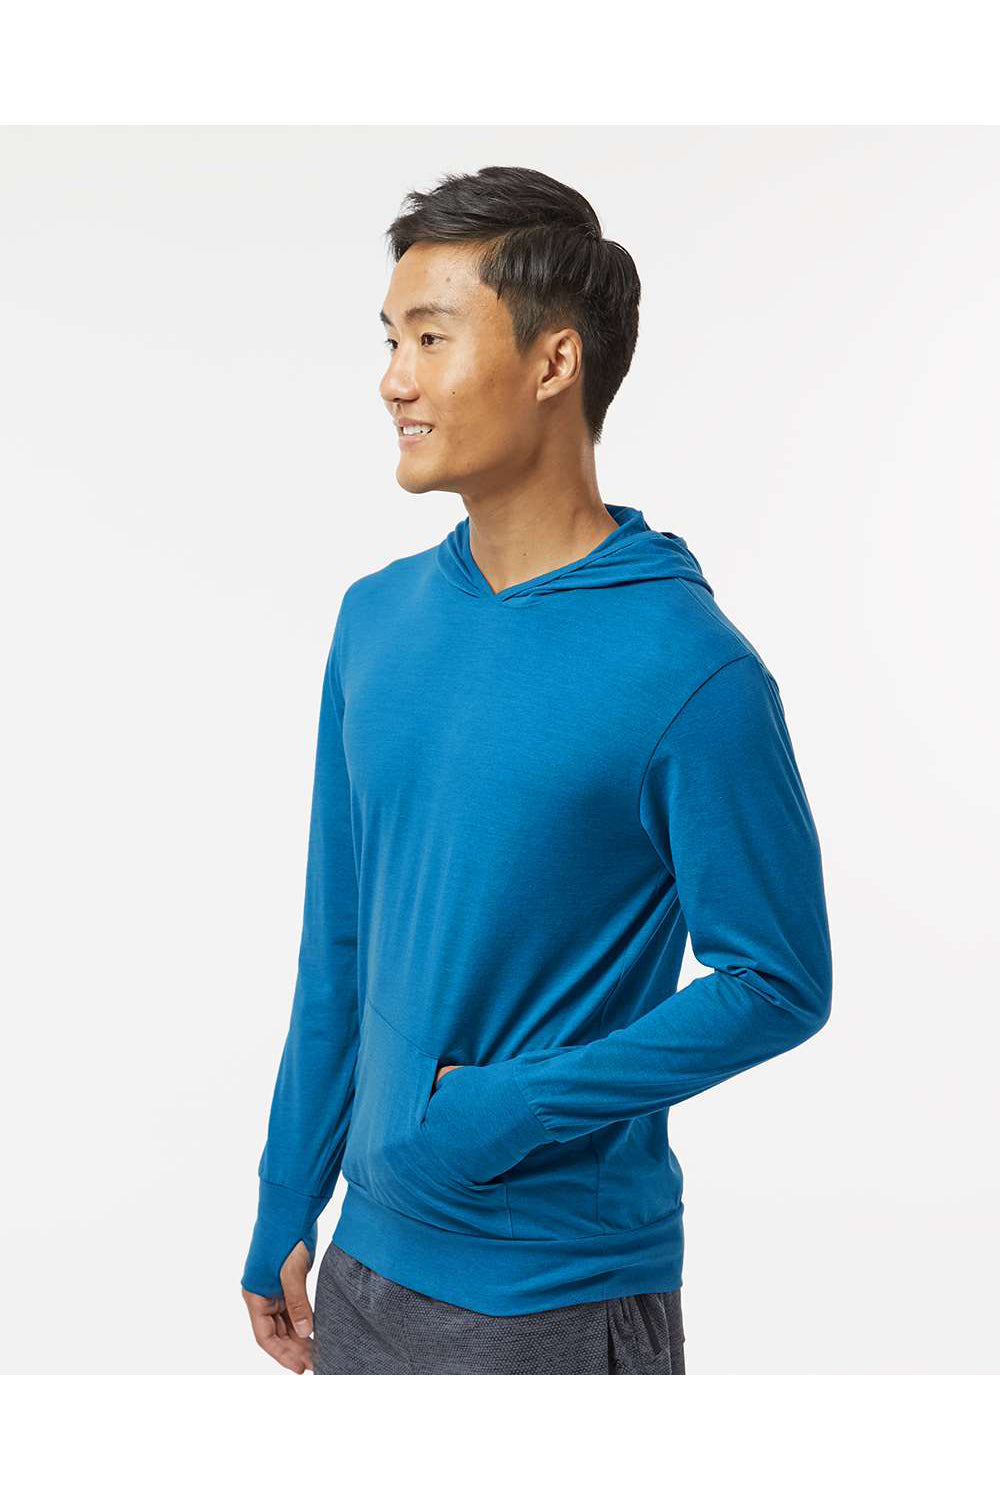 Kastlfel 4022 Mens RecycledSoft Hooded Long Sleeve T-Shirt Hoodie Breaker Blue Model Side